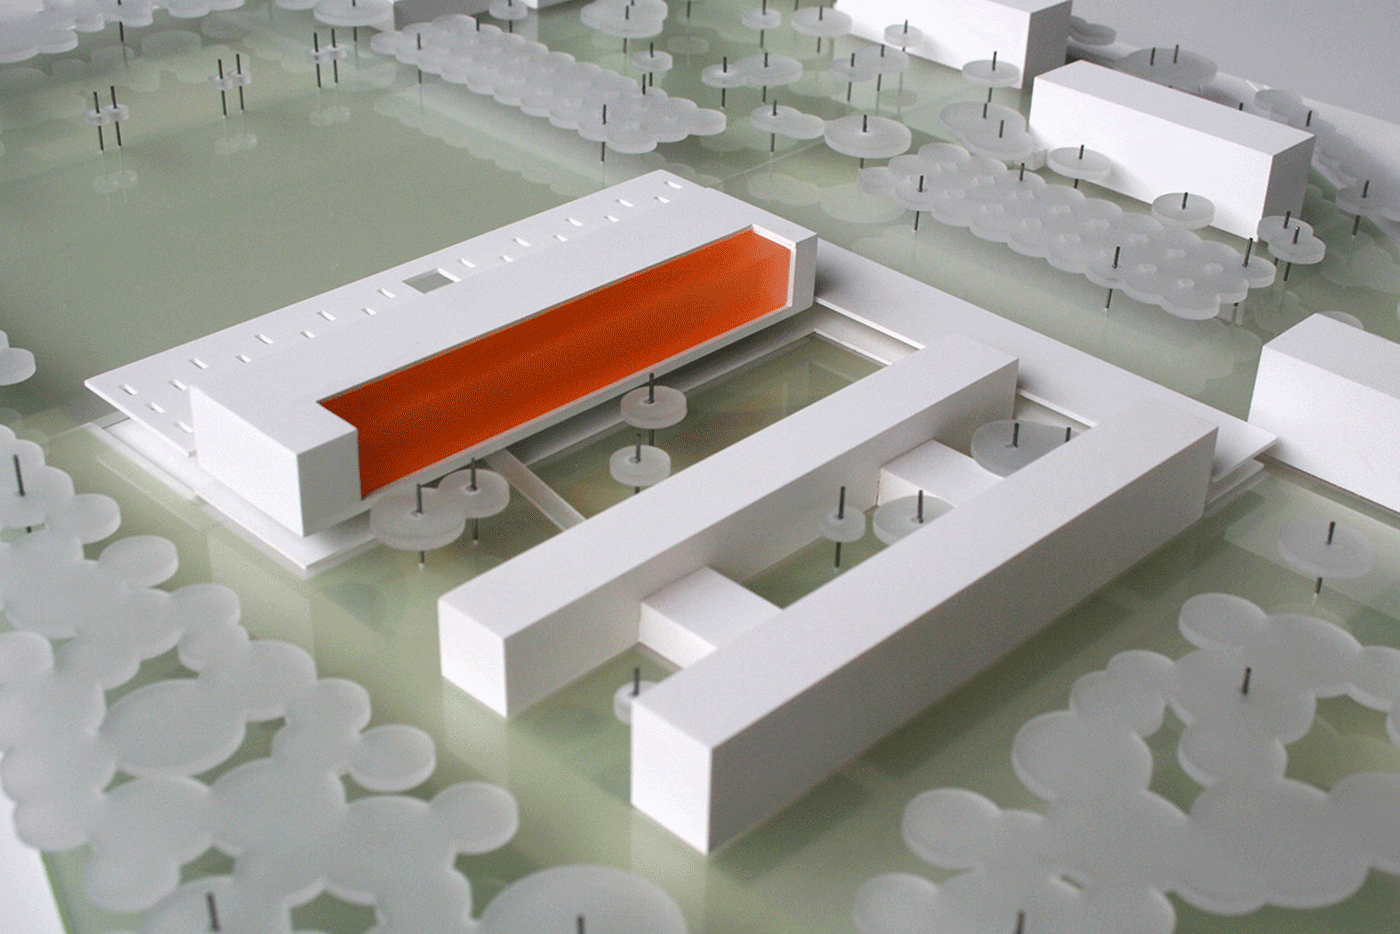 Bild von dem Modell des Schul-und Sportzentrums Fritz-Lesch-Straße - header